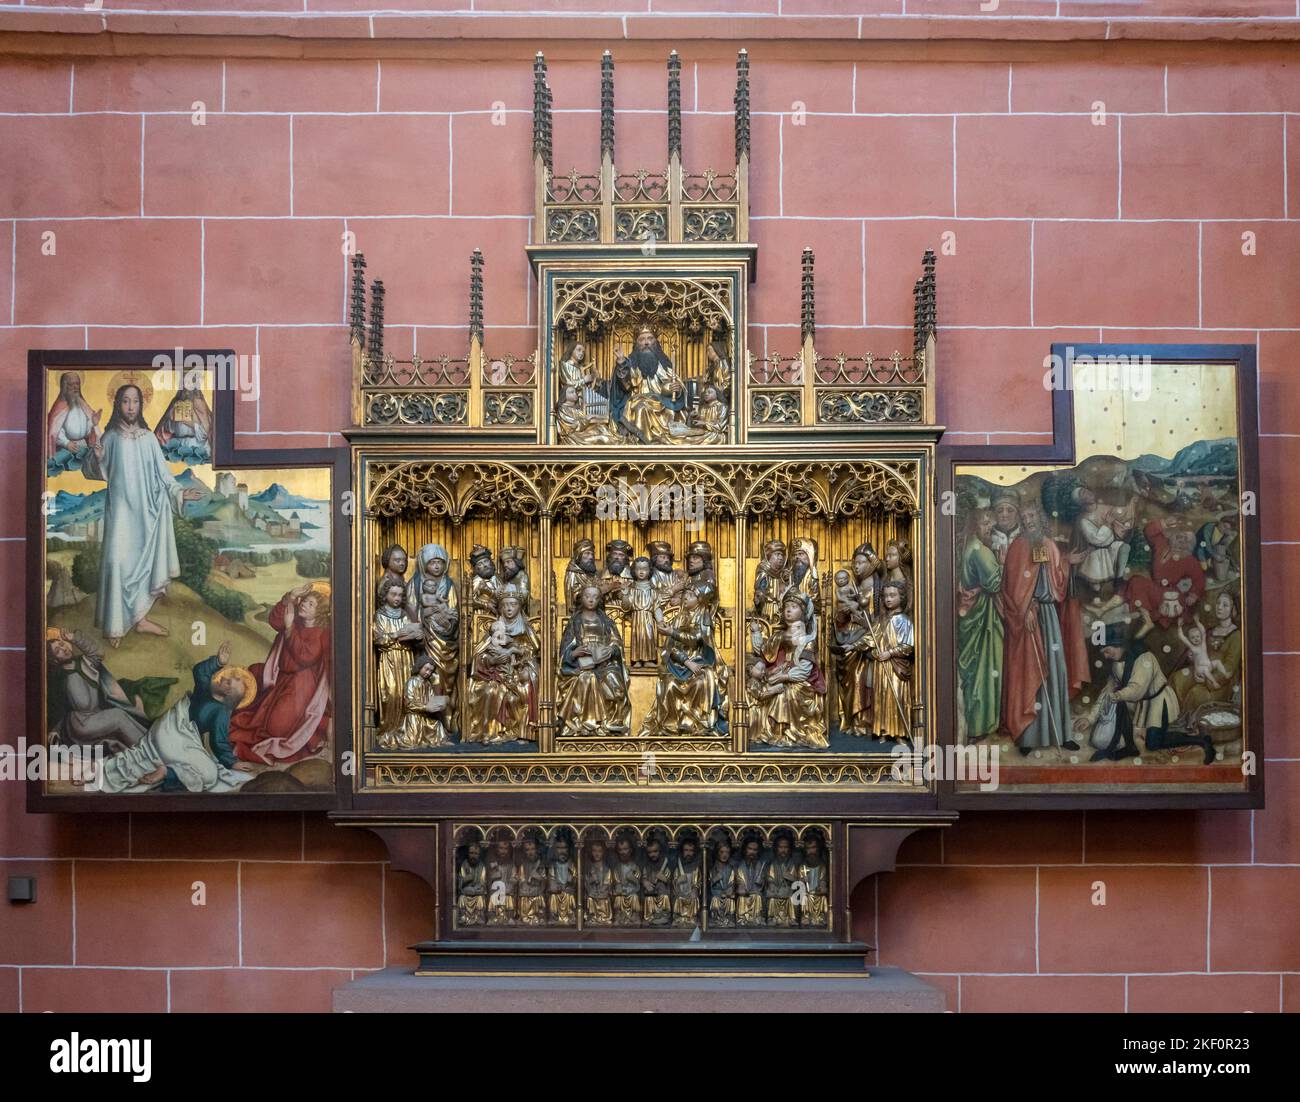 Altare medievale in legno intagliato e dipinto, Kaiserdom Sankt Bartholomäus, Cattedrale imperiale di San Bartolomeo, Francoforte, Germania Foto Stock